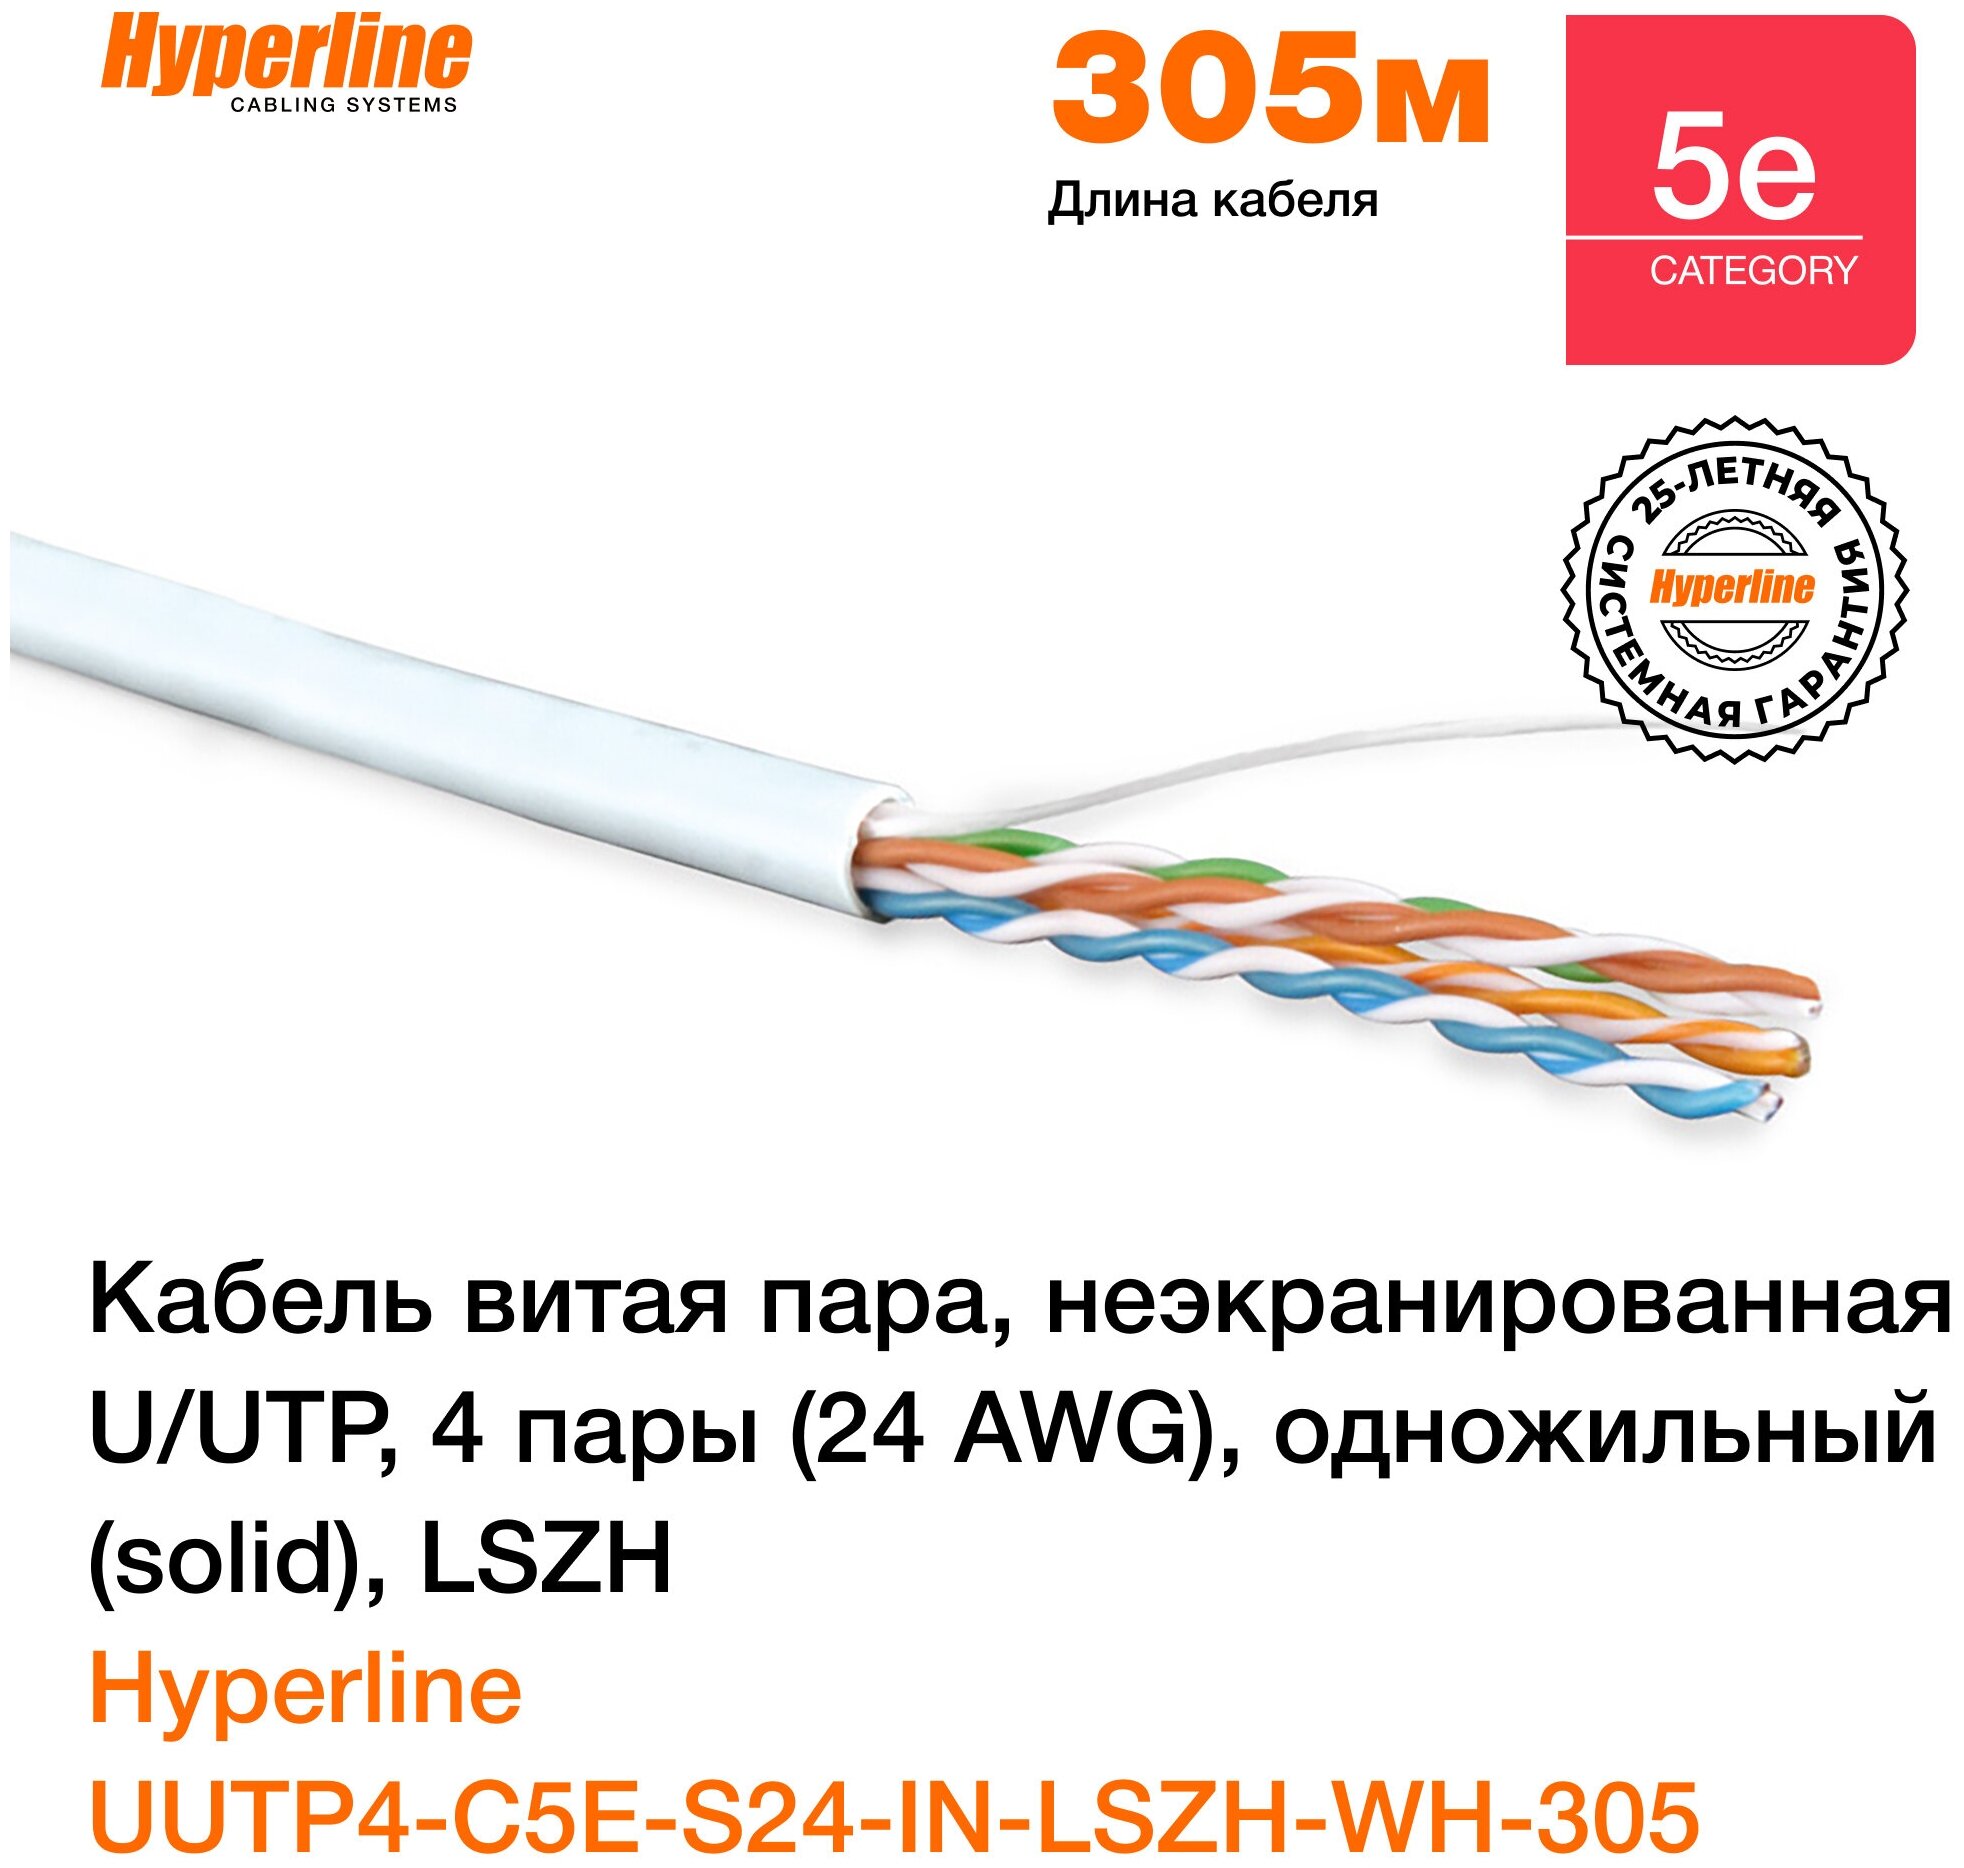 Кабель витая пара Hyperline UUTP4-C5E-S24-IN-LSZH-WH-305 (305 м)  неэкранированная U/UTP категория 5e 4 пары (24 AWG) одножильный LSZH белый